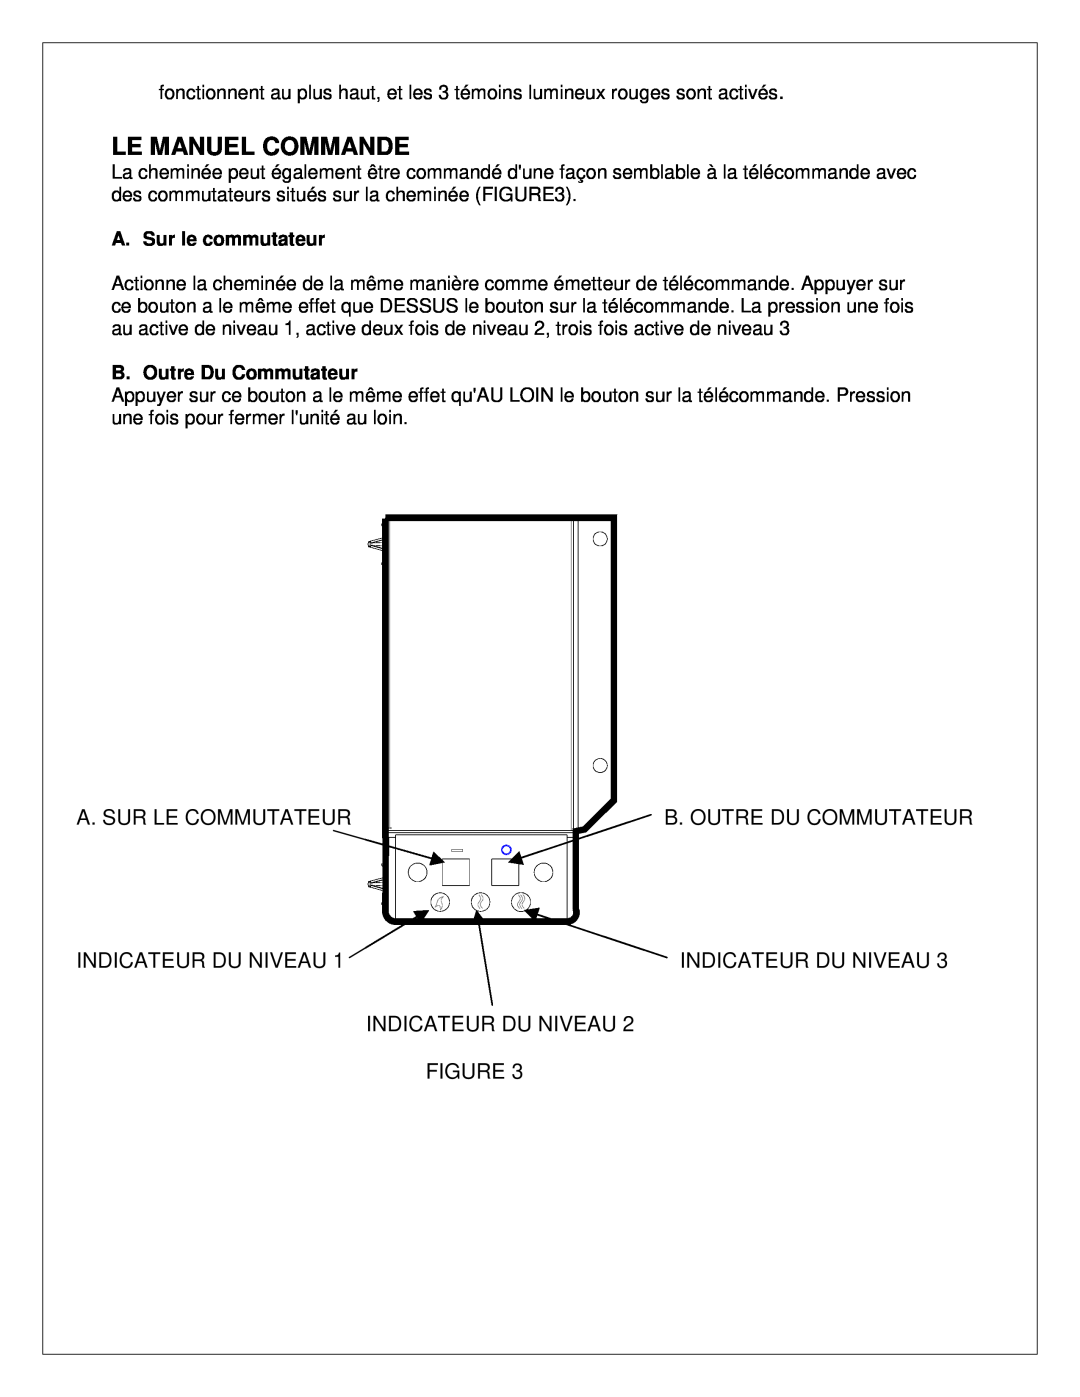 Dimplex 7206620100R02 manual Le Manuel Commande, A. Sur Le Commutateur Indicateur Du Niveau, A. Sur le commutateur 